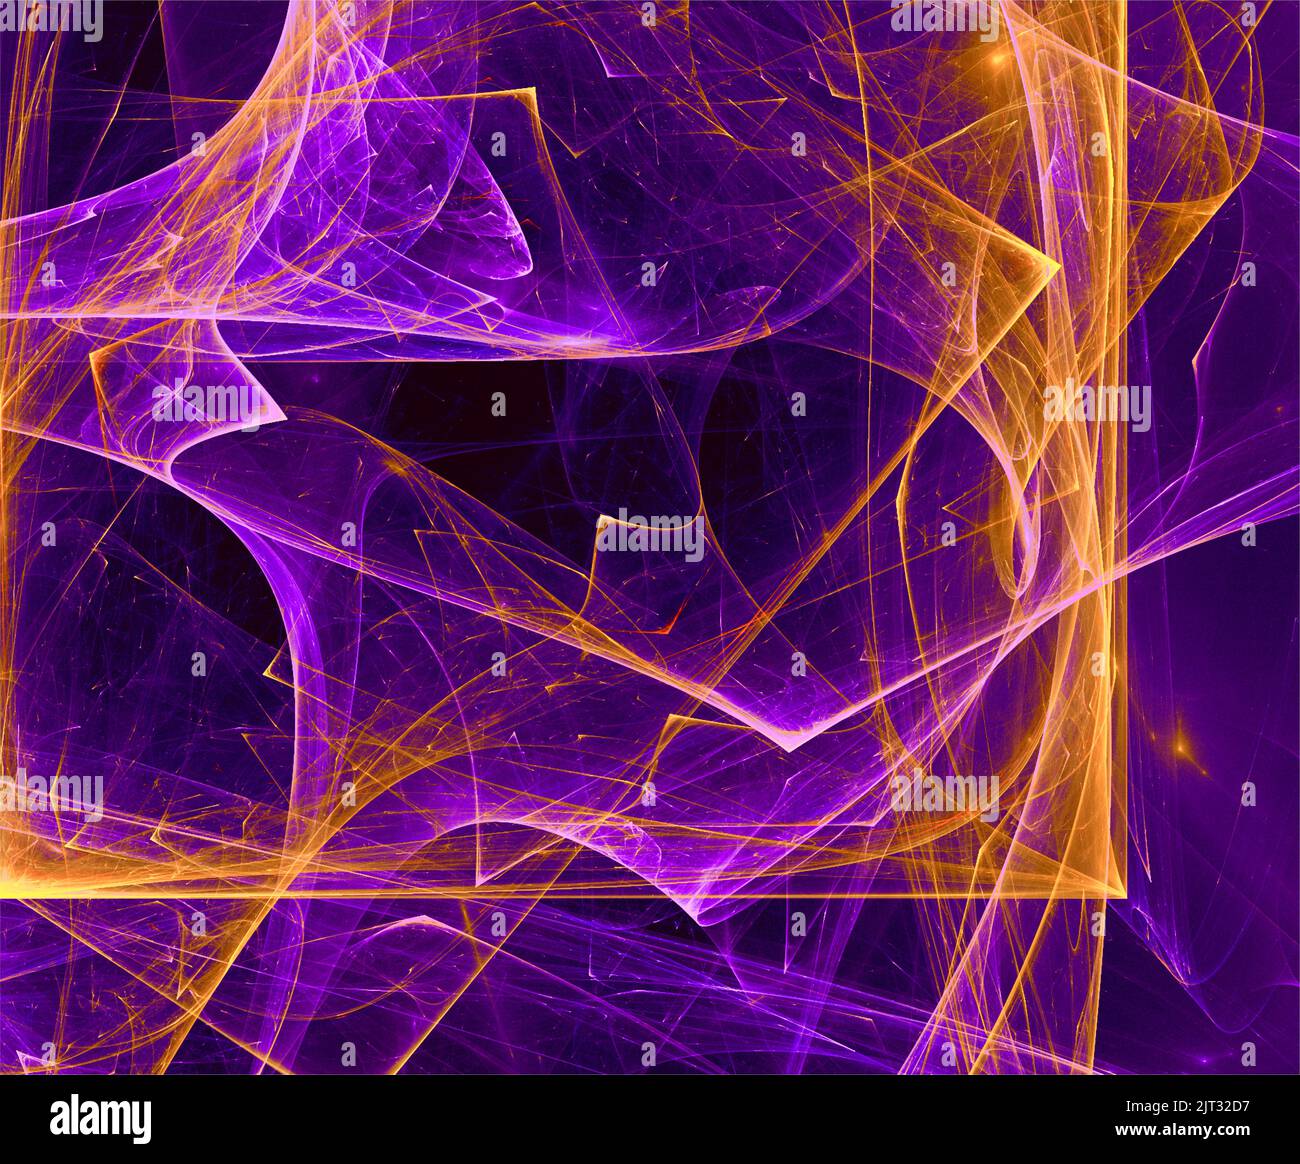 Abstrakter Hintergrund von hellen orange-violetten Linien auf schwarzem Hintergrund, neuronales Netz, Design Stockfoto